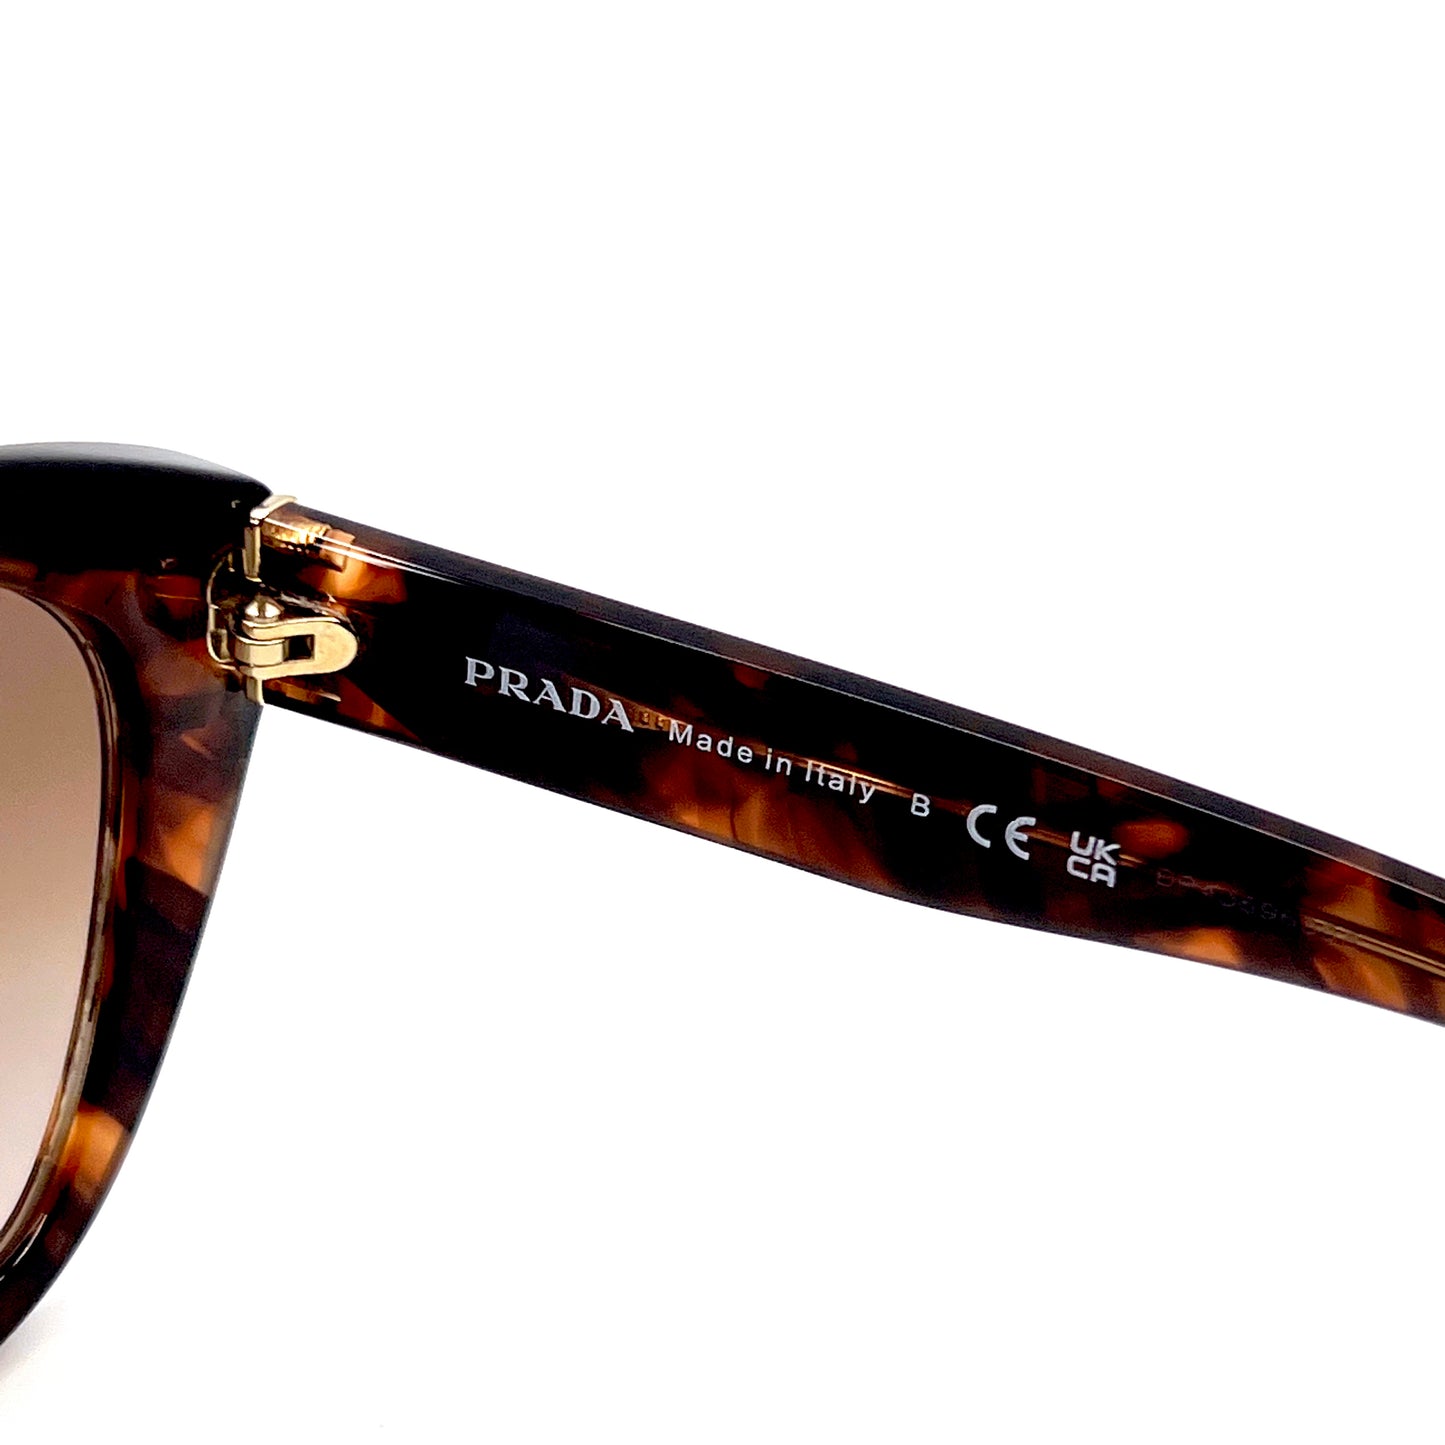 PRADA Sunglasses SPR16X 07R-0A6